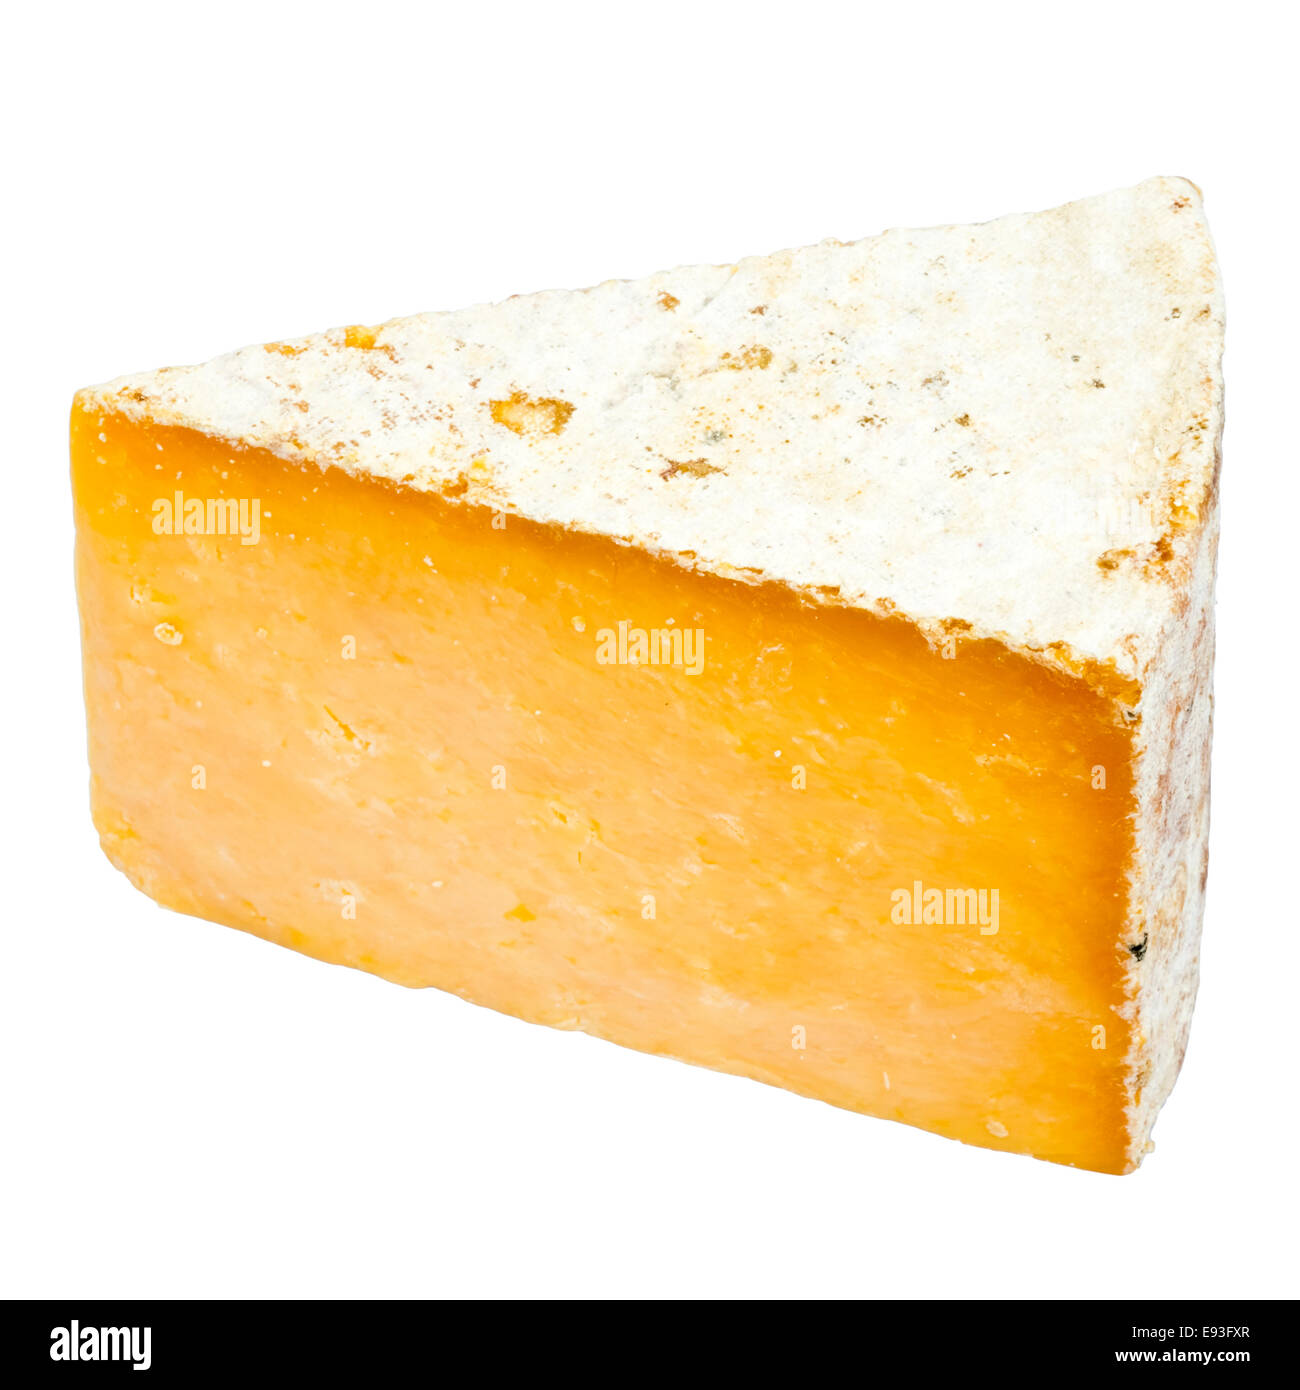 Cuña de queso Leicester rojas cortadas o aisladas contra un fondo blanco. Foto de stock